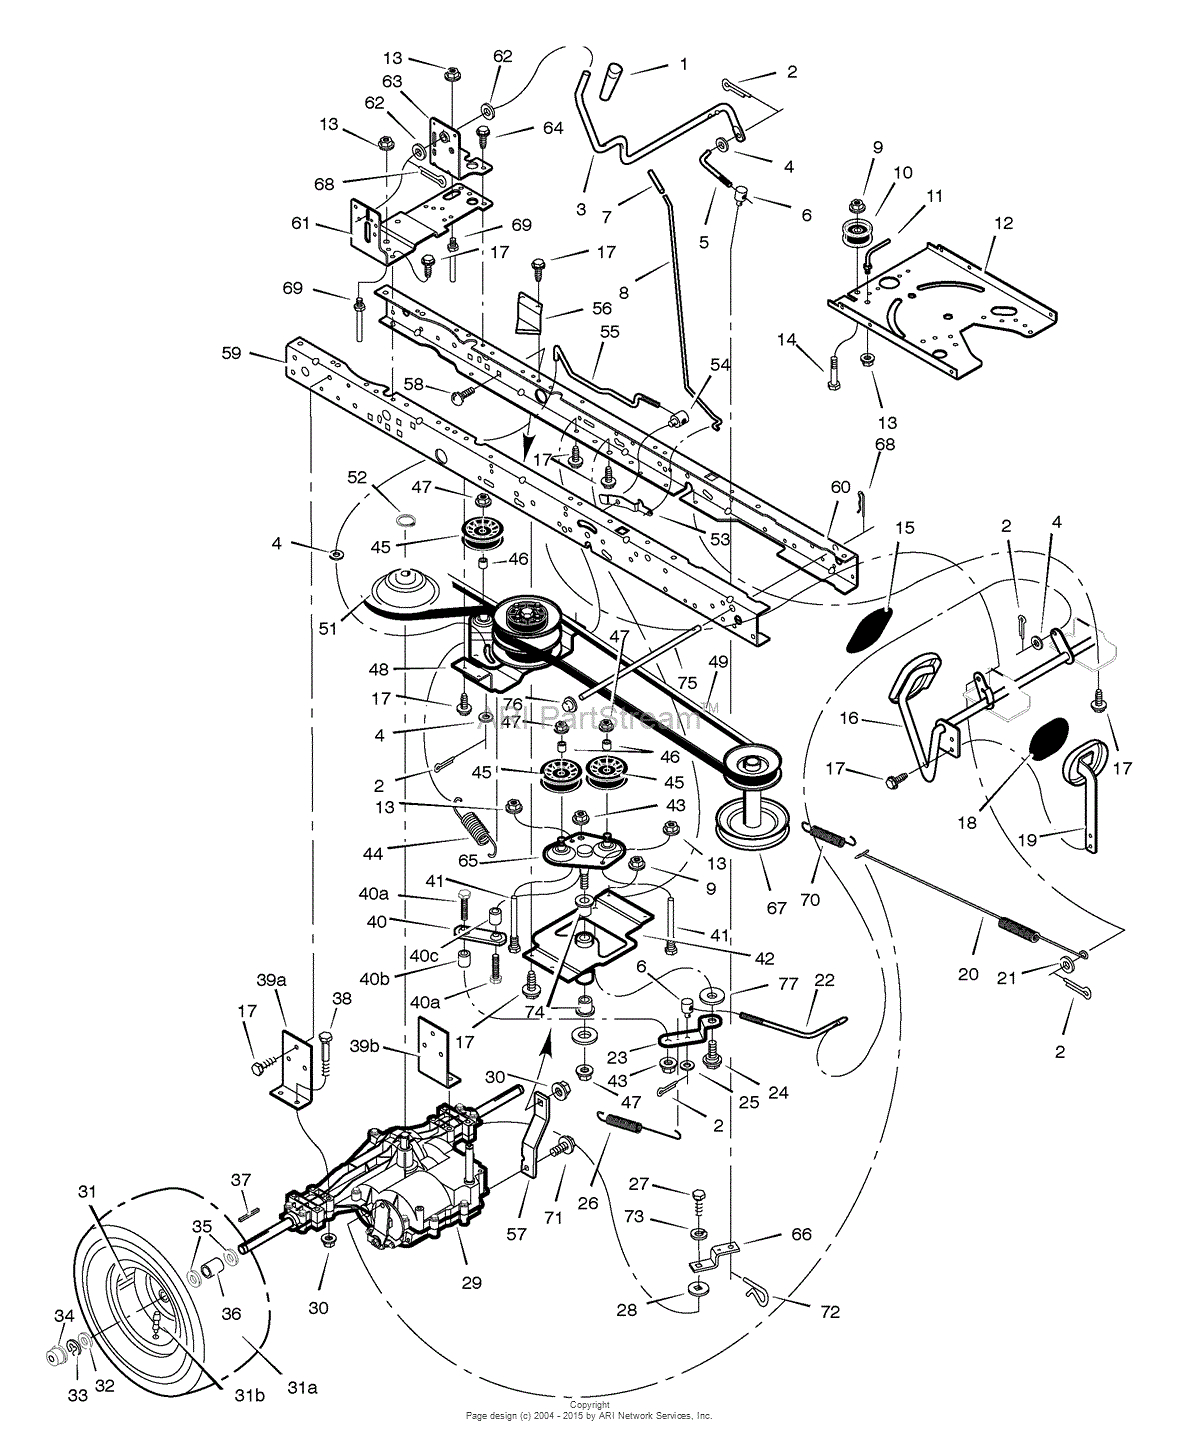 33 Craftsman Riding Lawn Mower Drive Belt Diagram Wiring Diagram Database